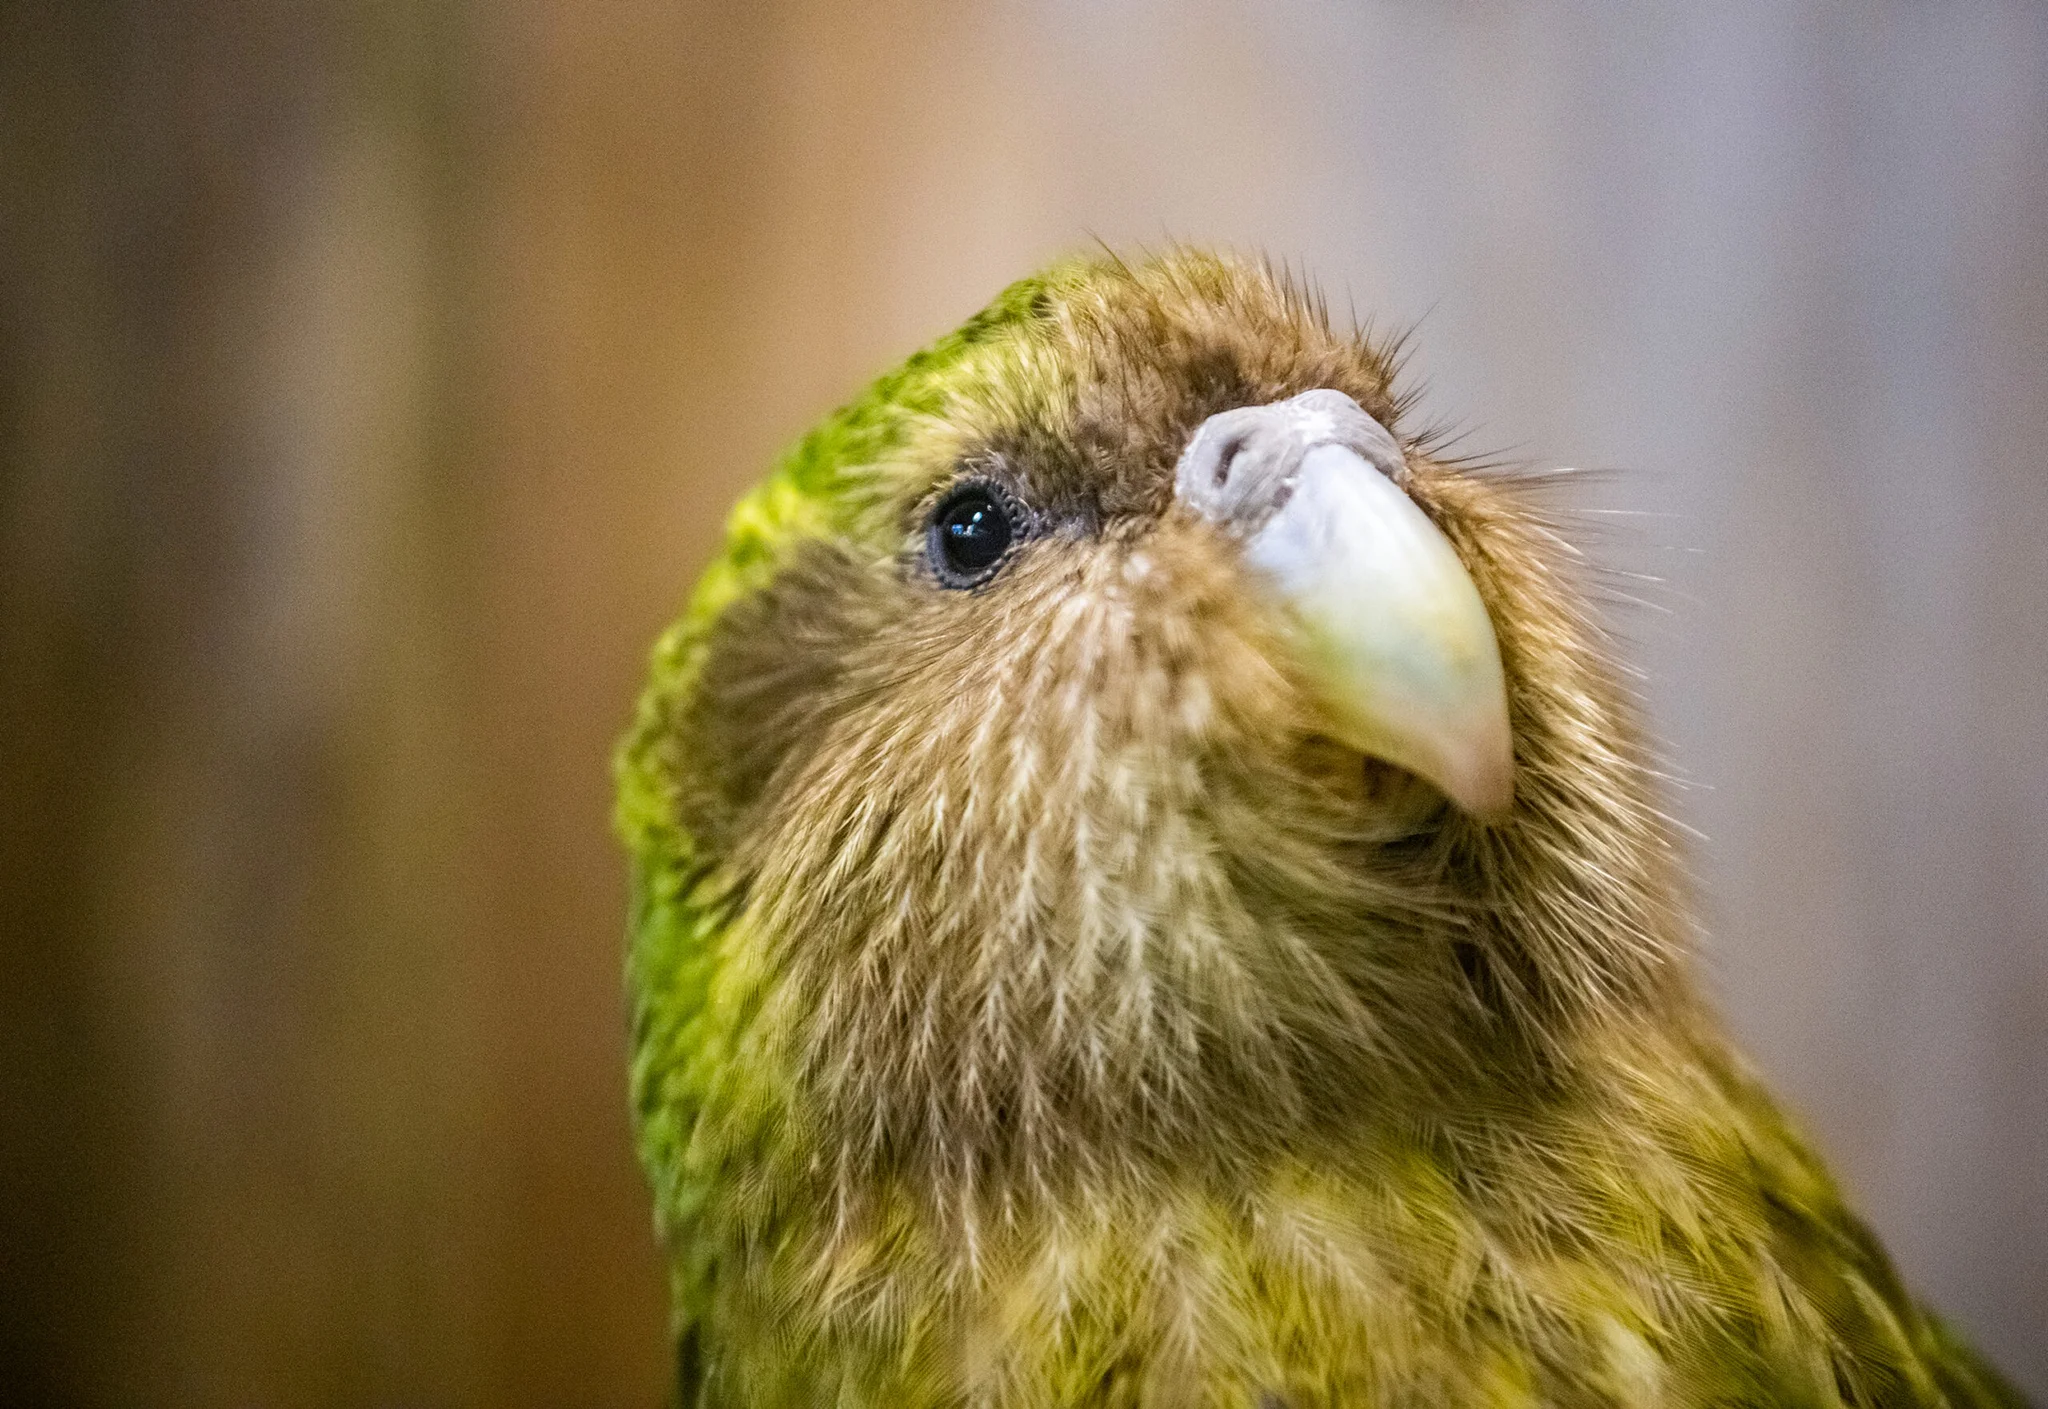 นักวิทย์นิวซีแลนด์อนุรักษ์ 'นกแก้วใกล้สูญพันธุ์' ผ่านการจัดลำดับจีโนม